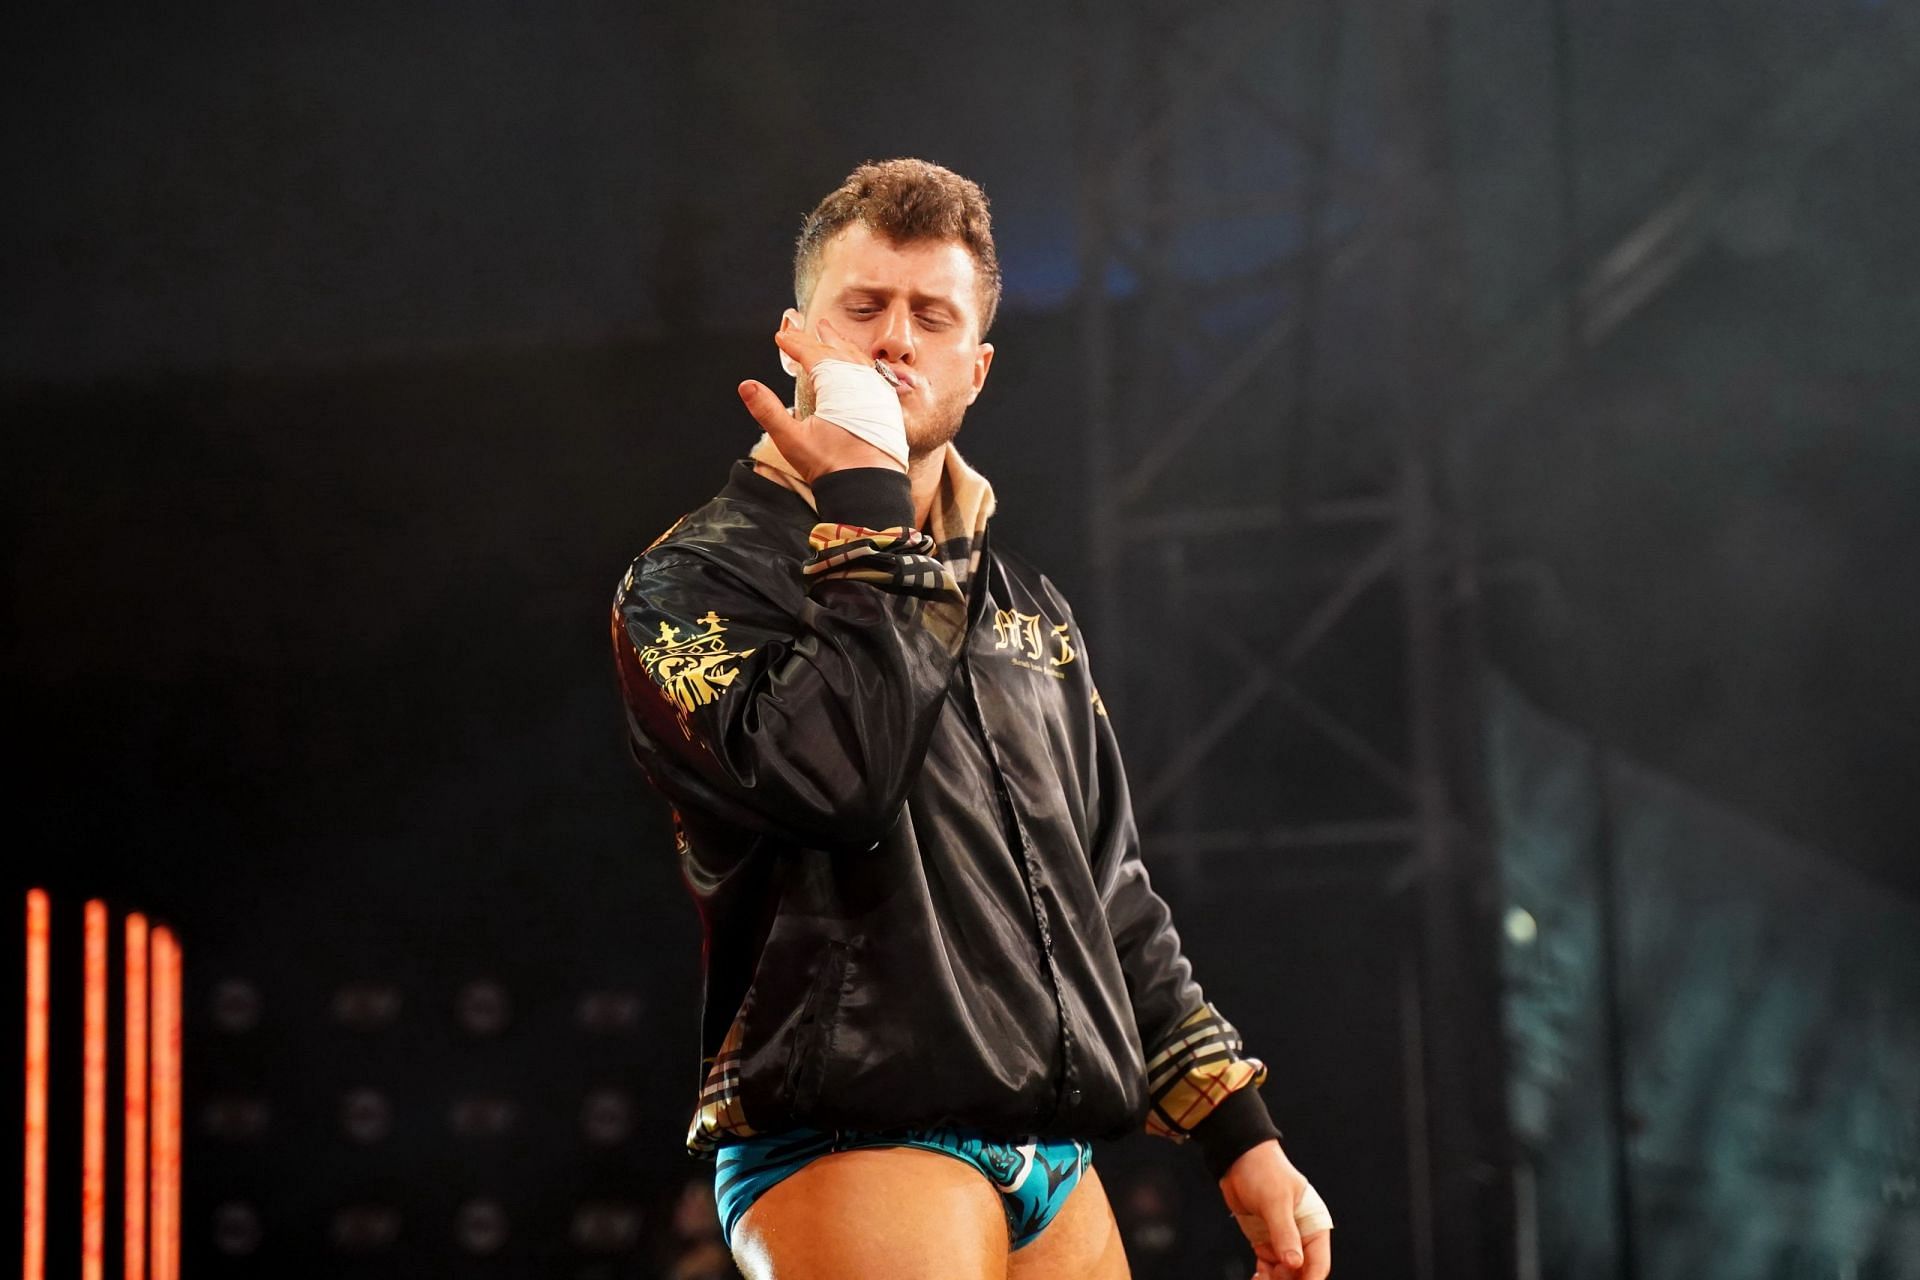 AEW star Maxwell Jacob Friedman will face CM Punk at AEW Revolution 2022